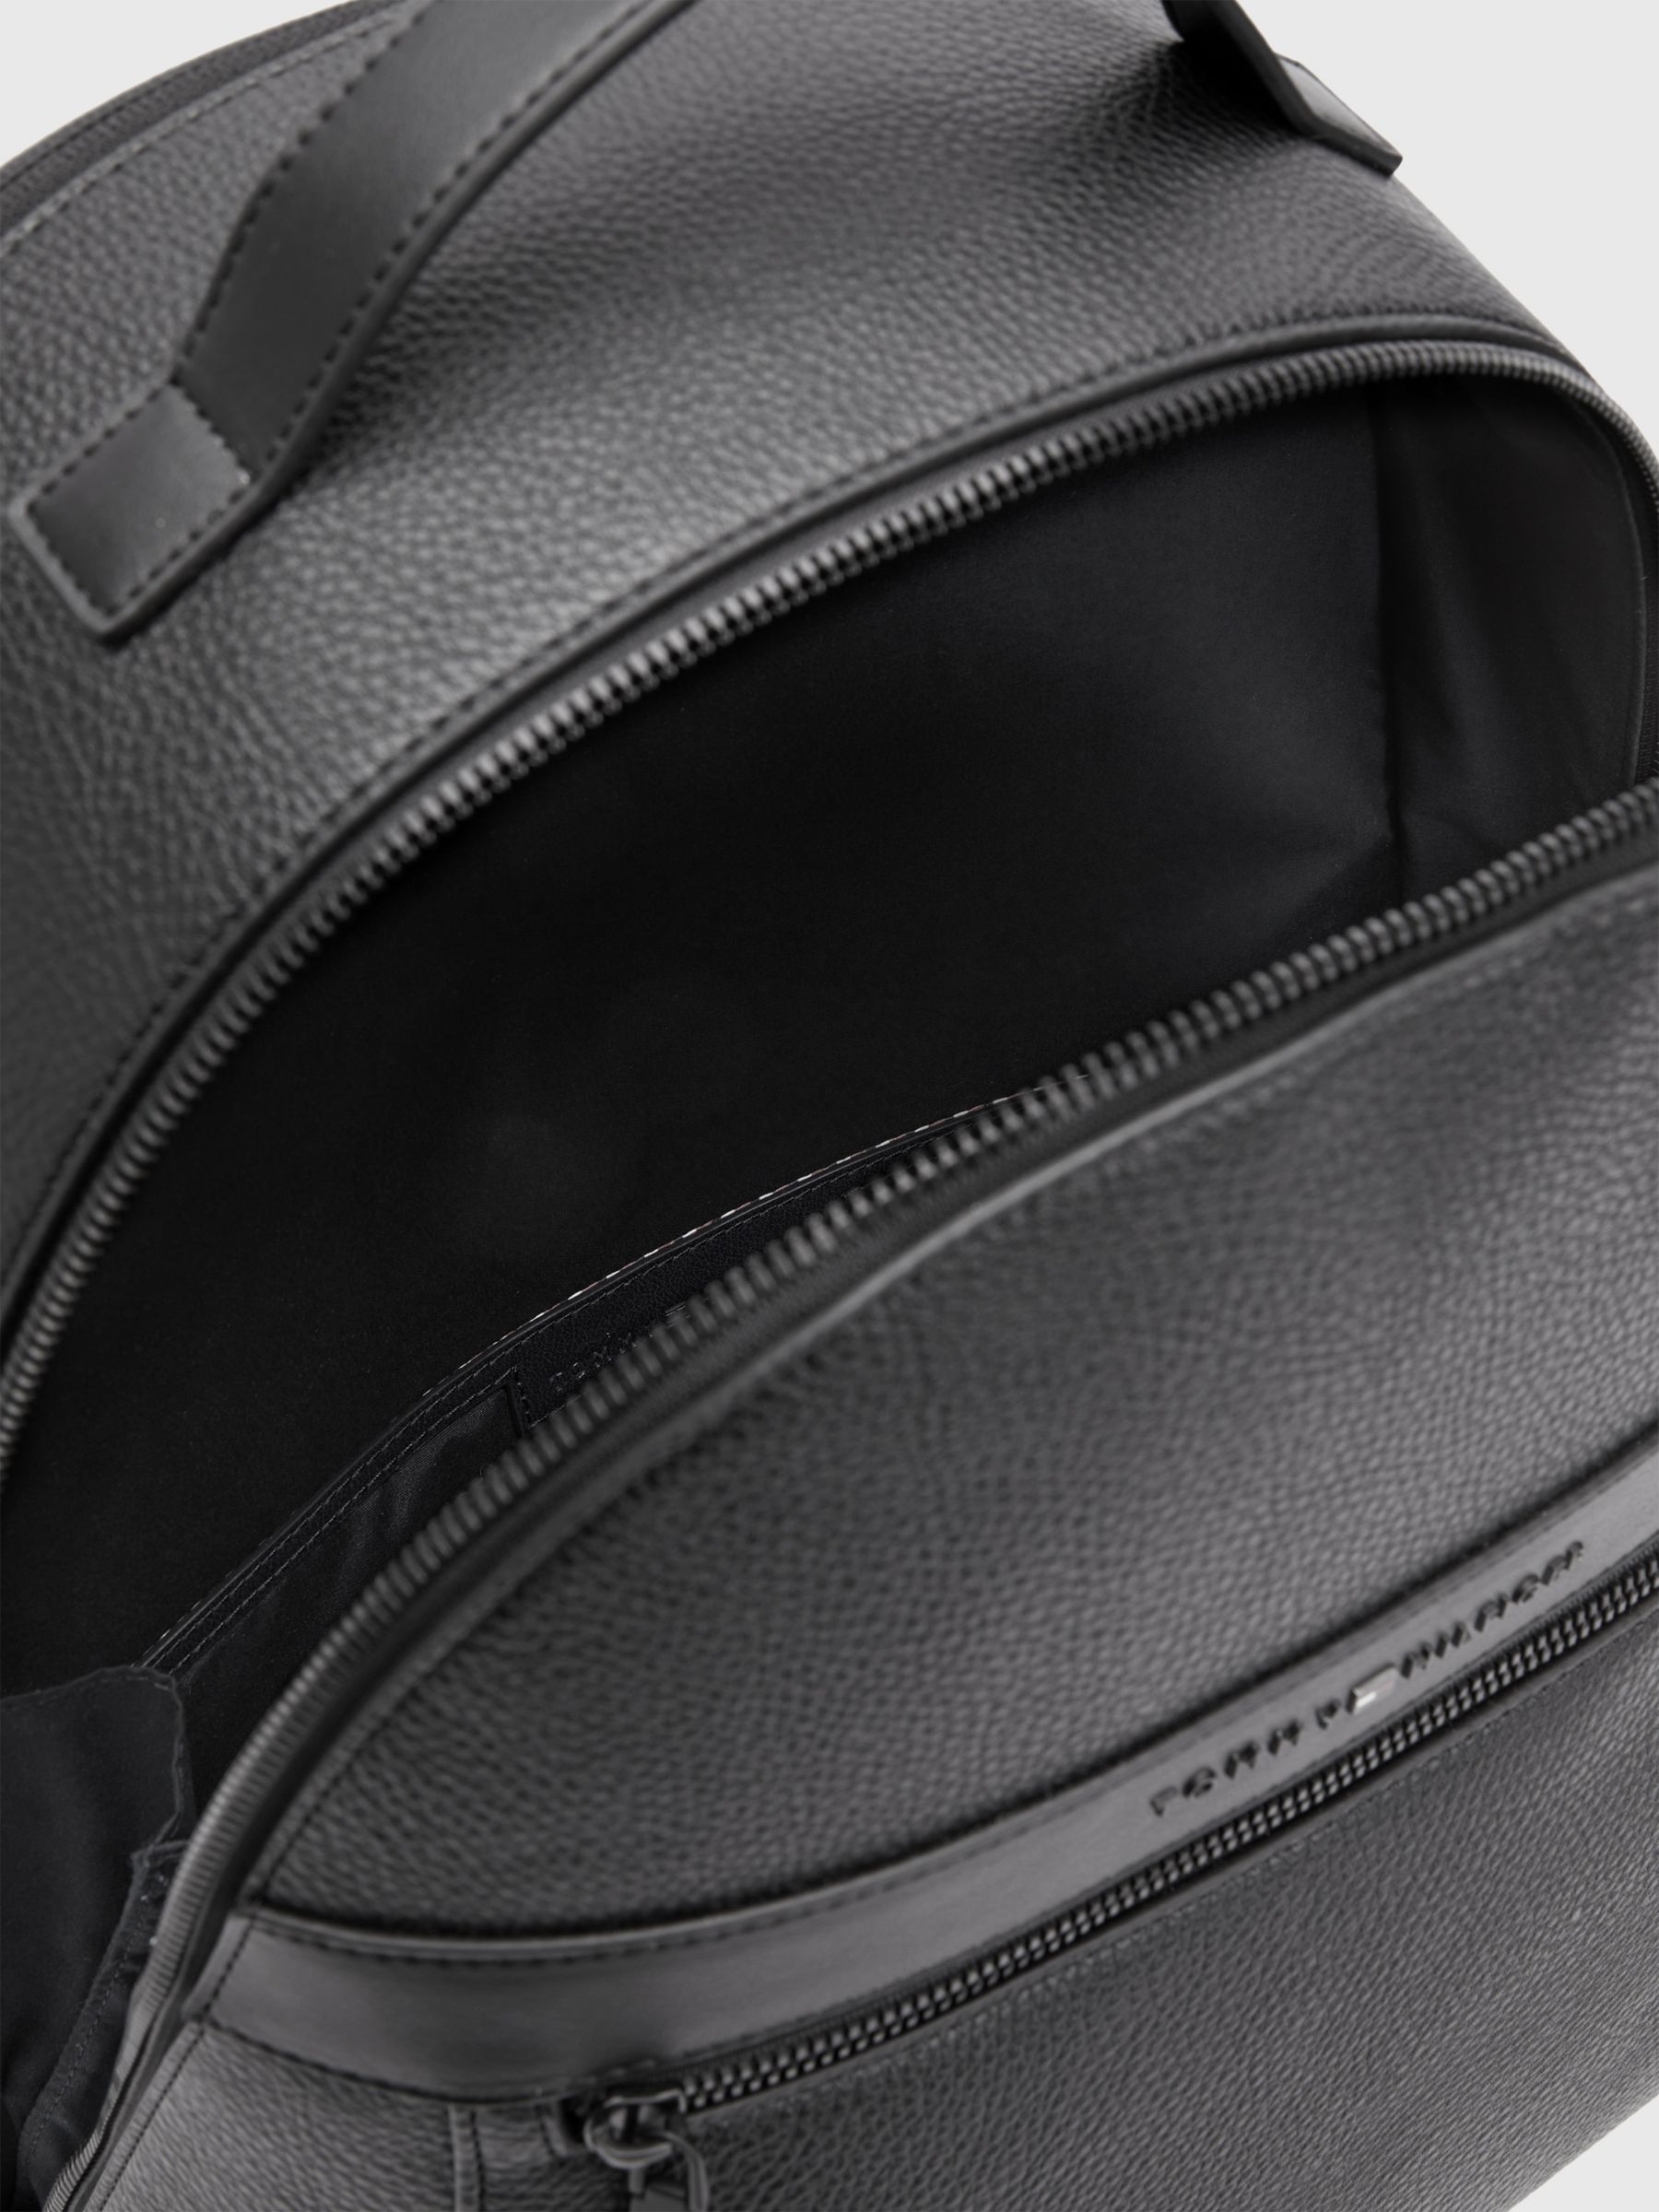 Tommy Hilfiger Central Plain Backpack, Black at John Lewis & Partners